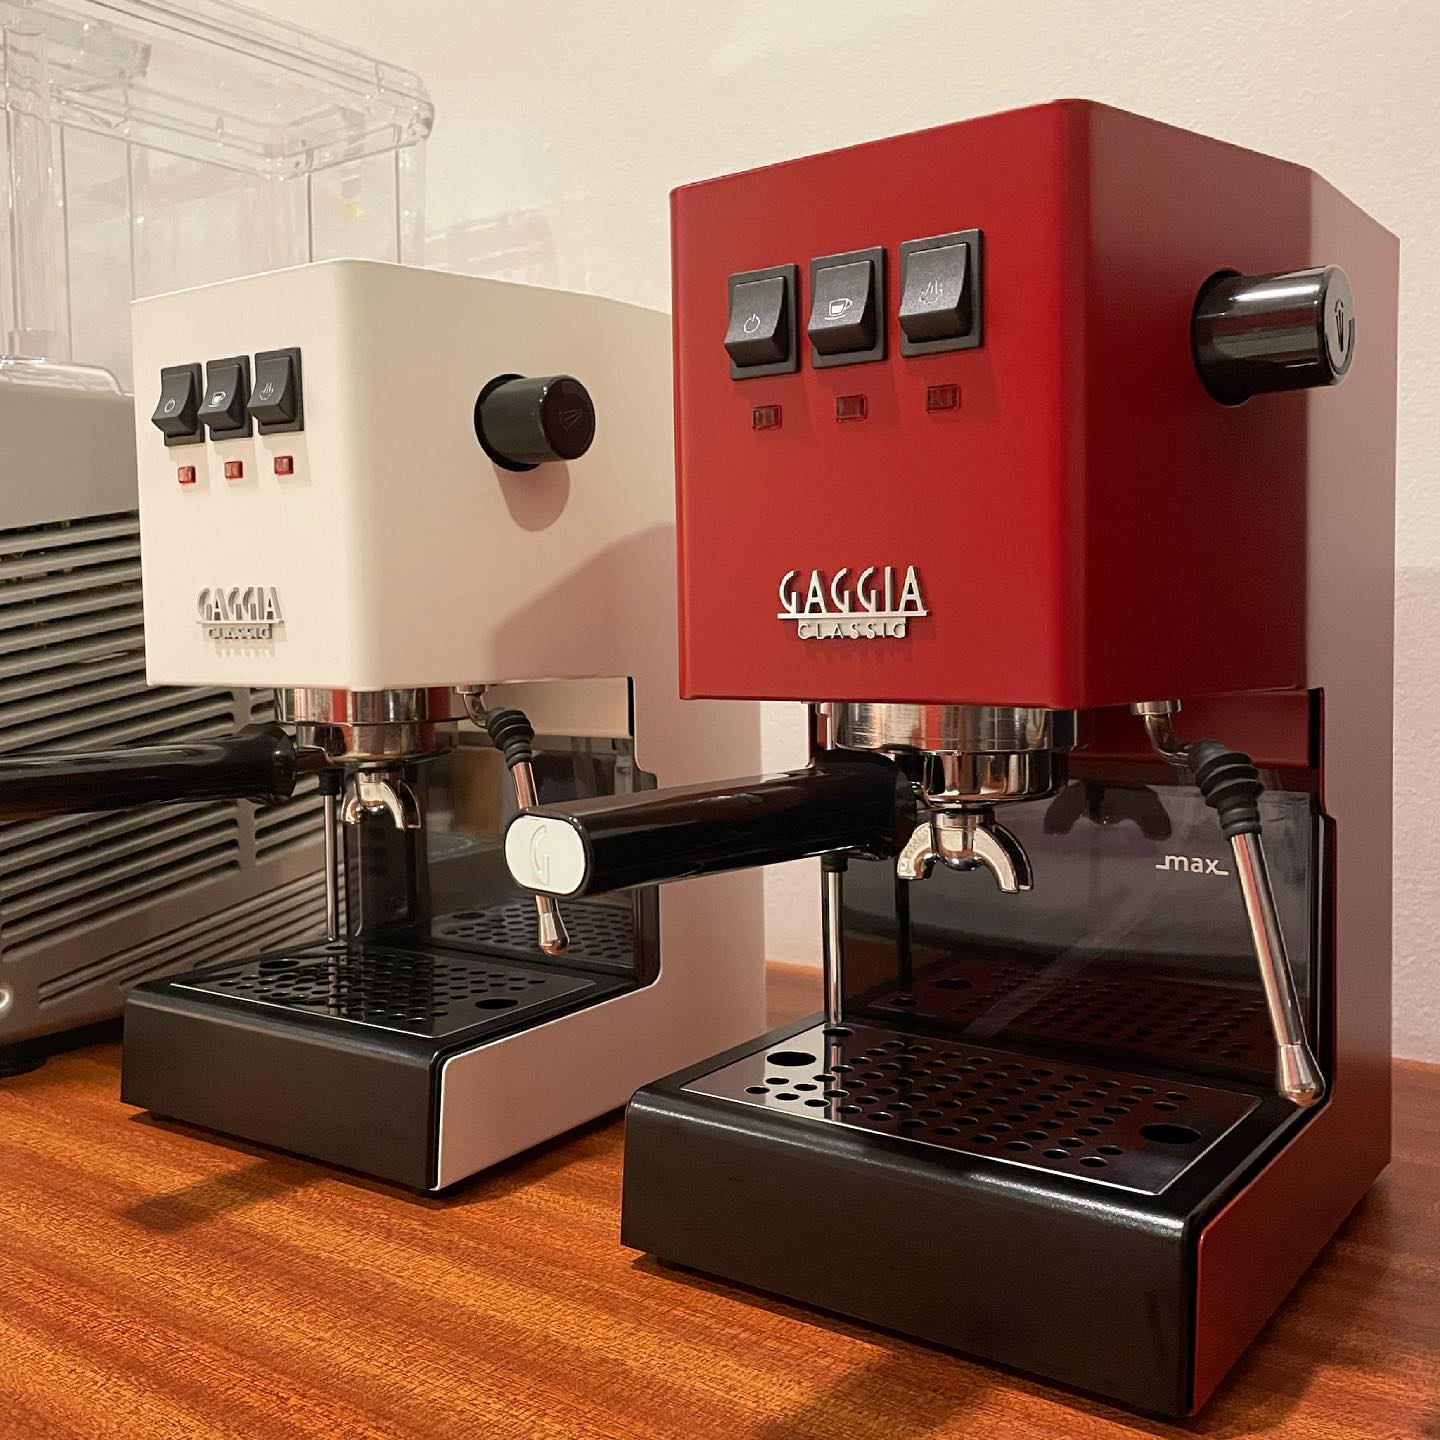 Gaggia Classic Pro brews more balanced espresso